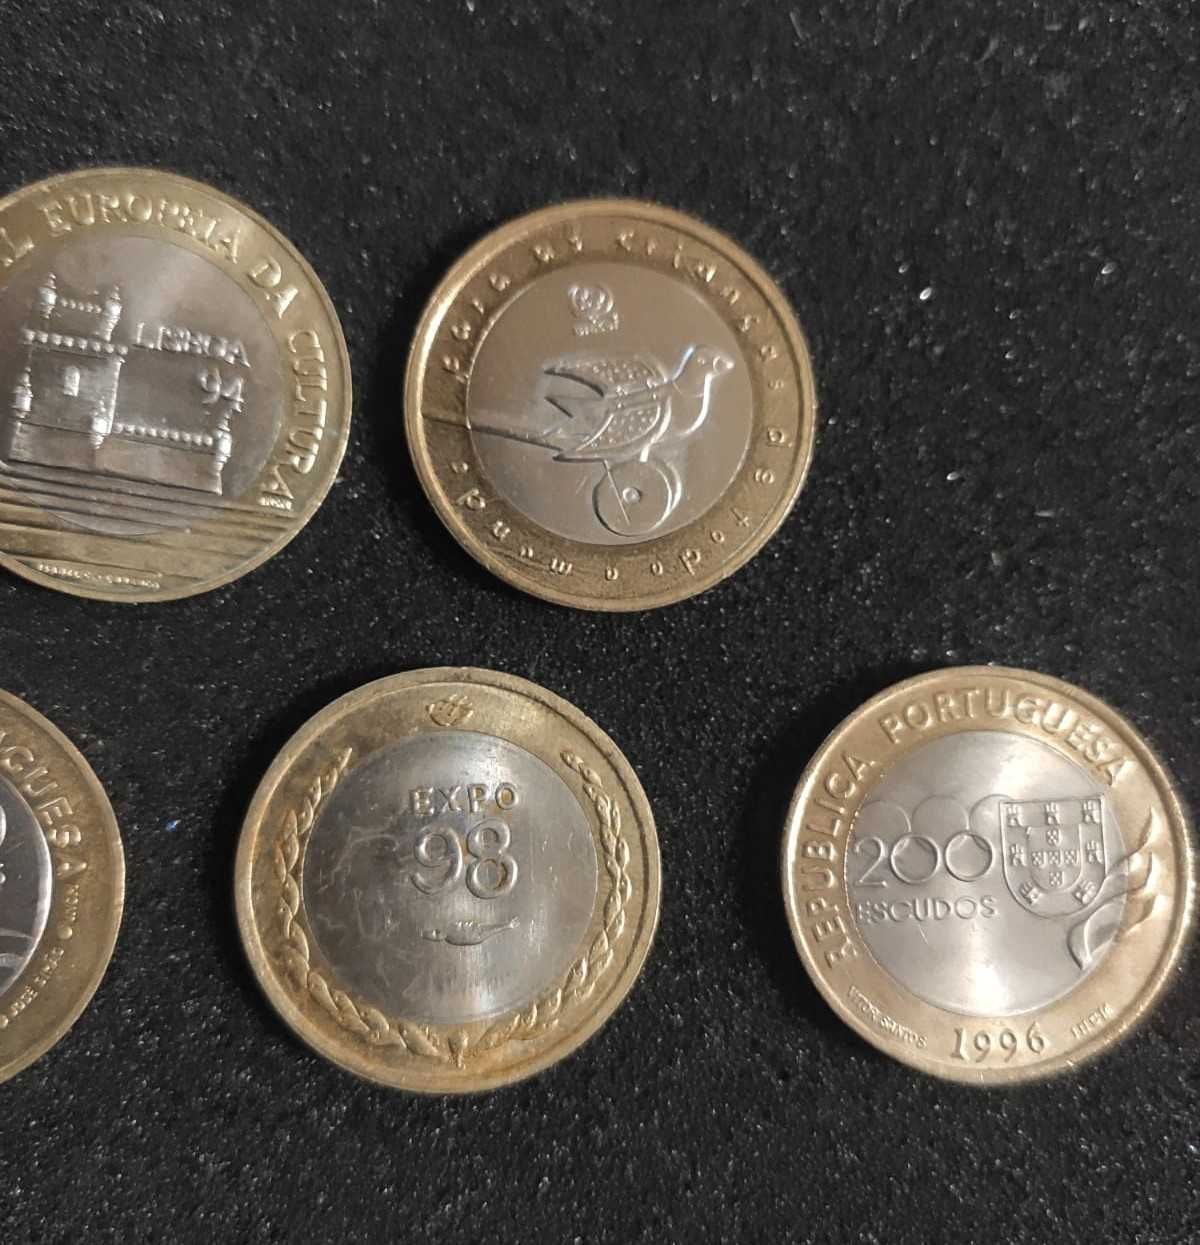 7 moedas de 200$ Bimetálicas - TODAS